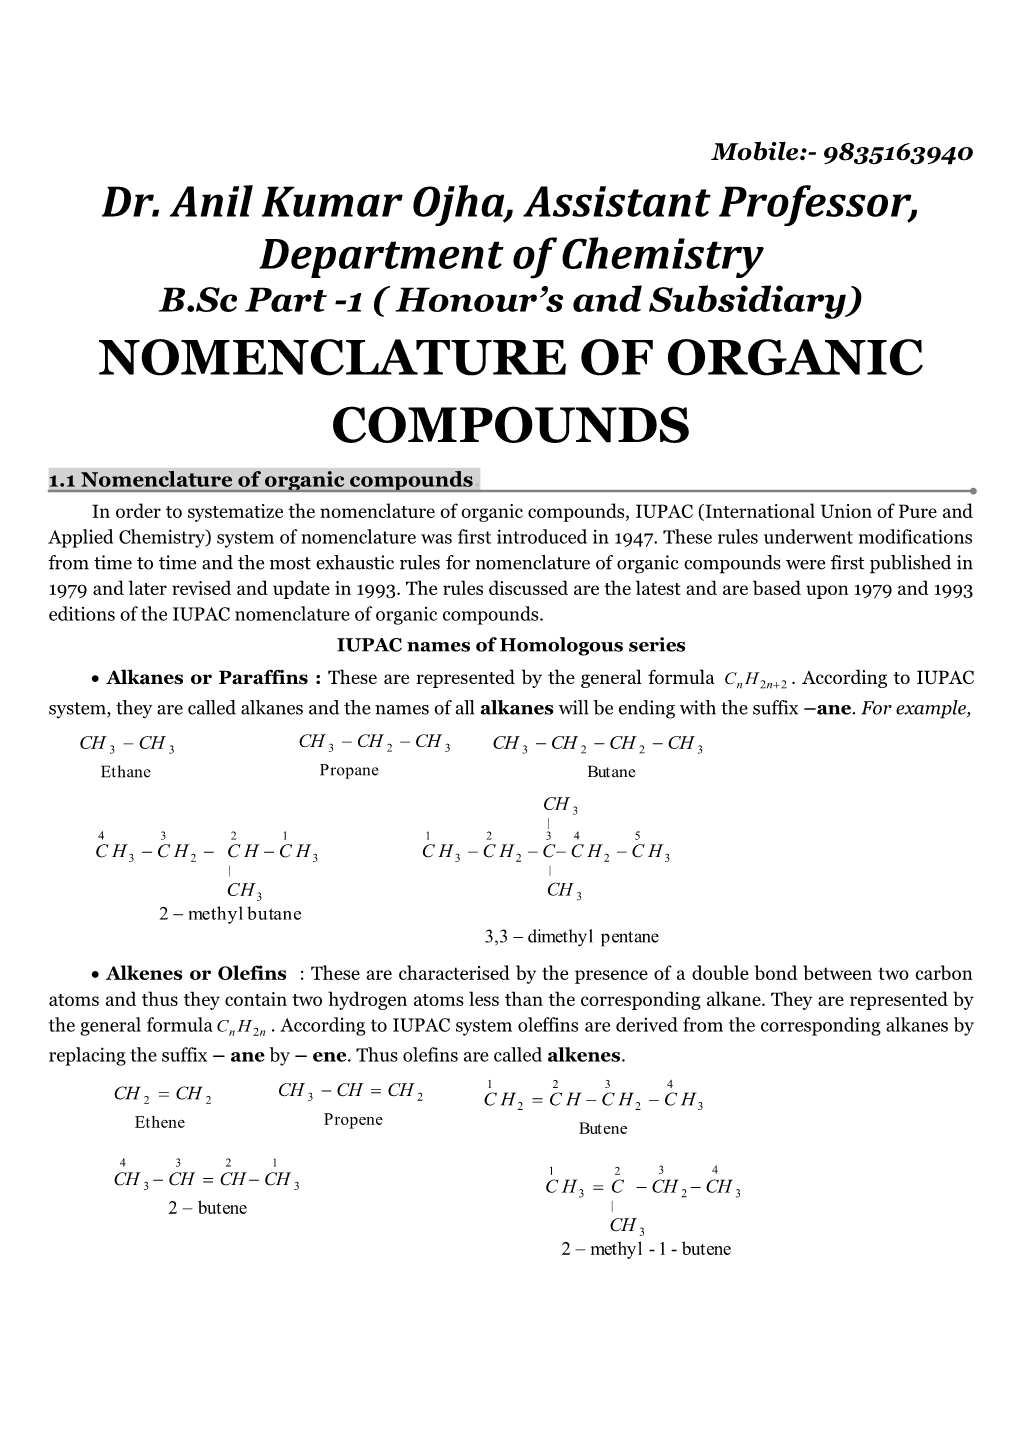 NOMENCLATURE of ORGANIC COMPOUNDS 1.1 Nomenclature of Organic Compounds